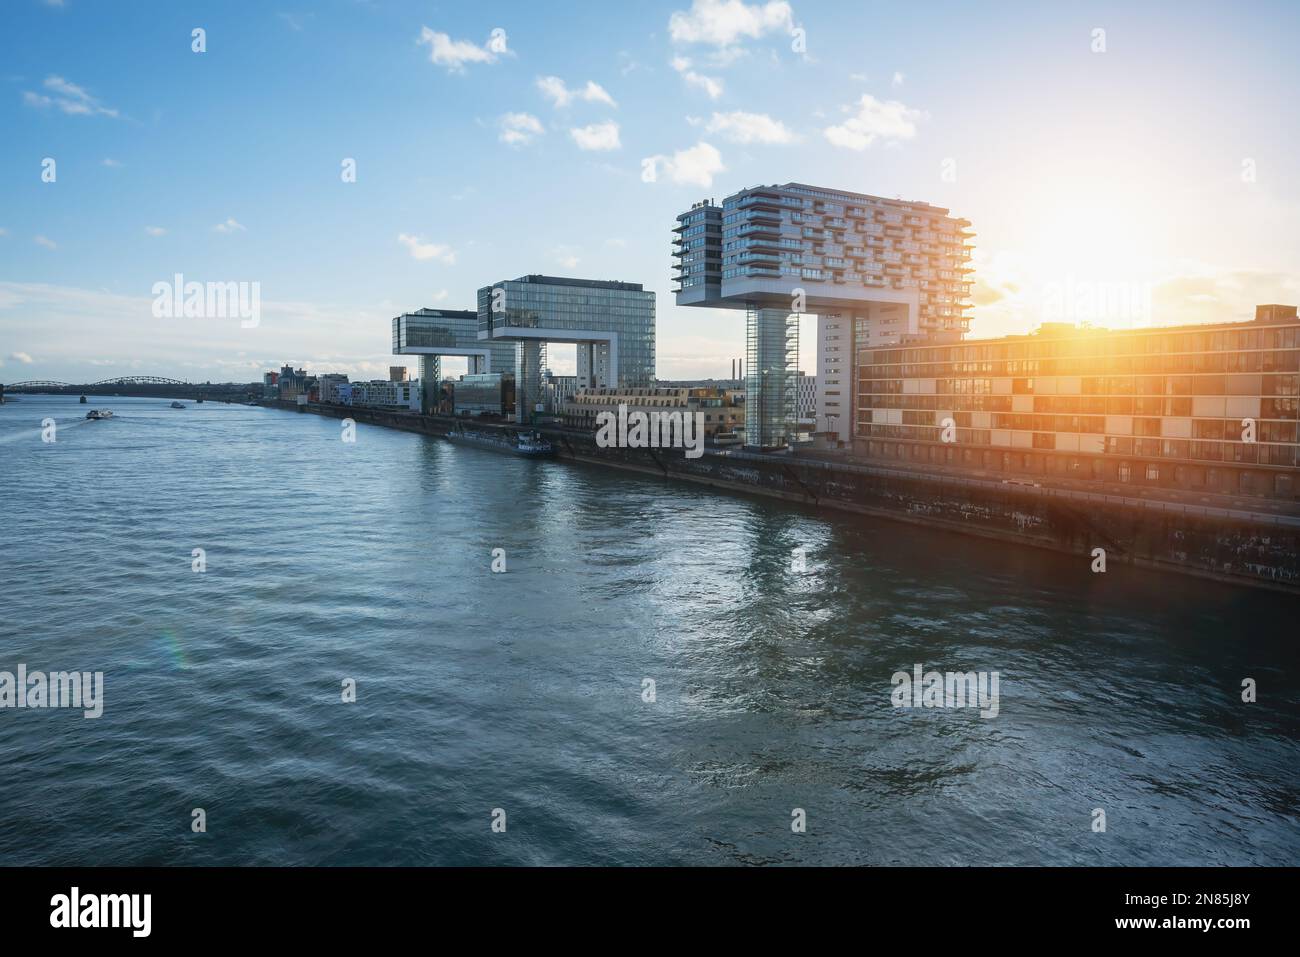 Rheinauhafen Skyline au bord du Rhin avec les bâtiments Kranhaus - Cologne, Allemagne Banque D'Images